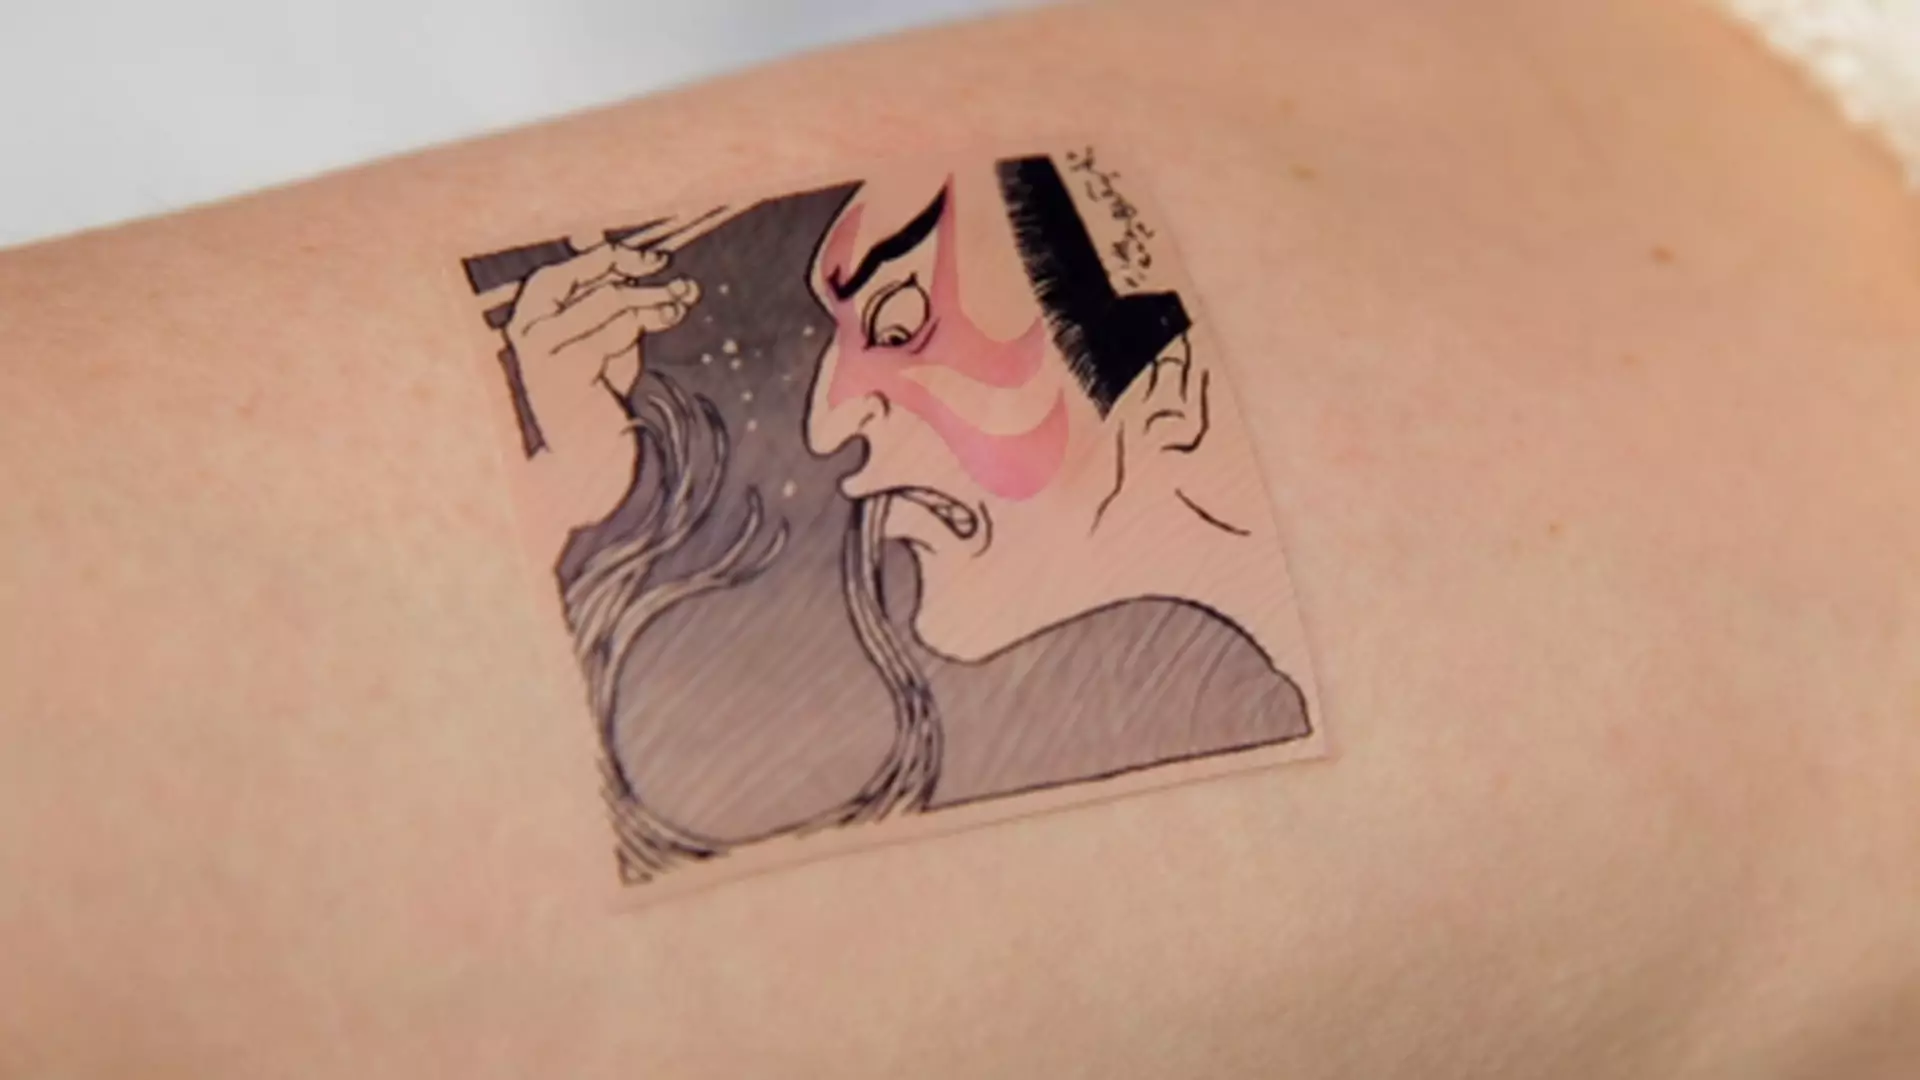 Nowoczesne tatuaże, które mogą uratować ci życie i w dodatku wyglądają super